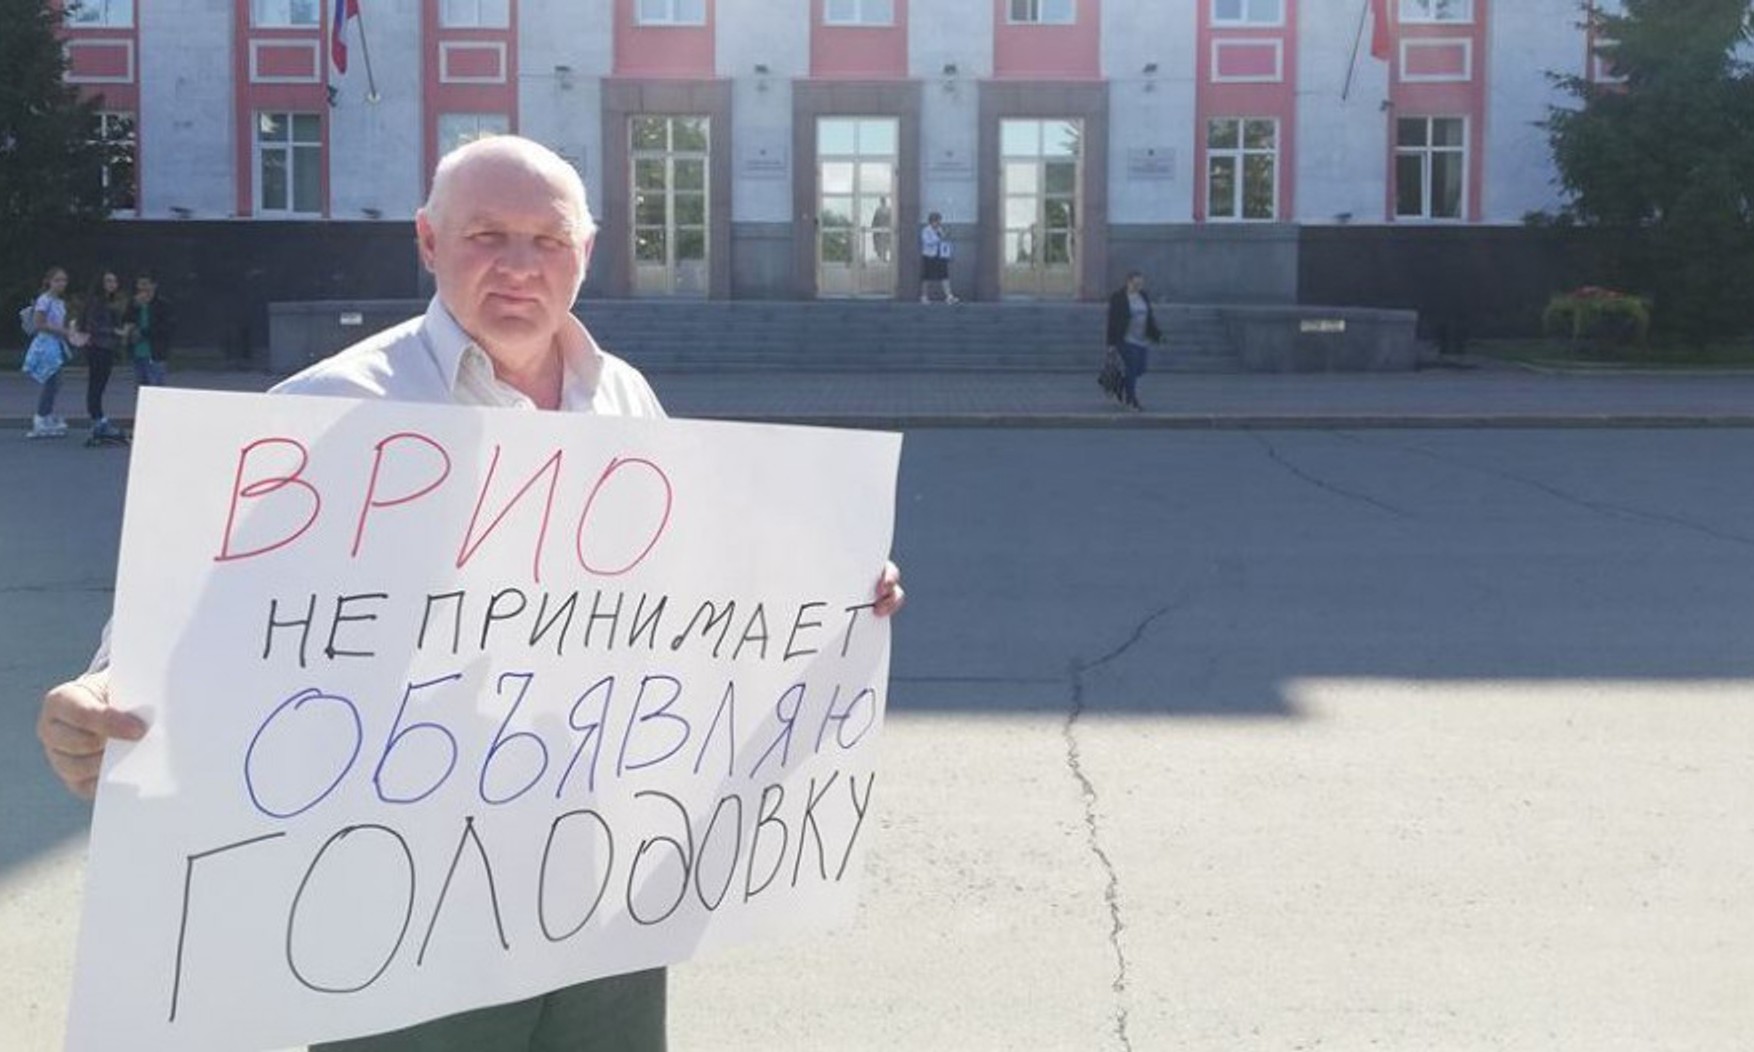 У Барнаулі затримали місцевого активіста через напис про Путіна на масці. Співробітники поліції порахували її плакатом